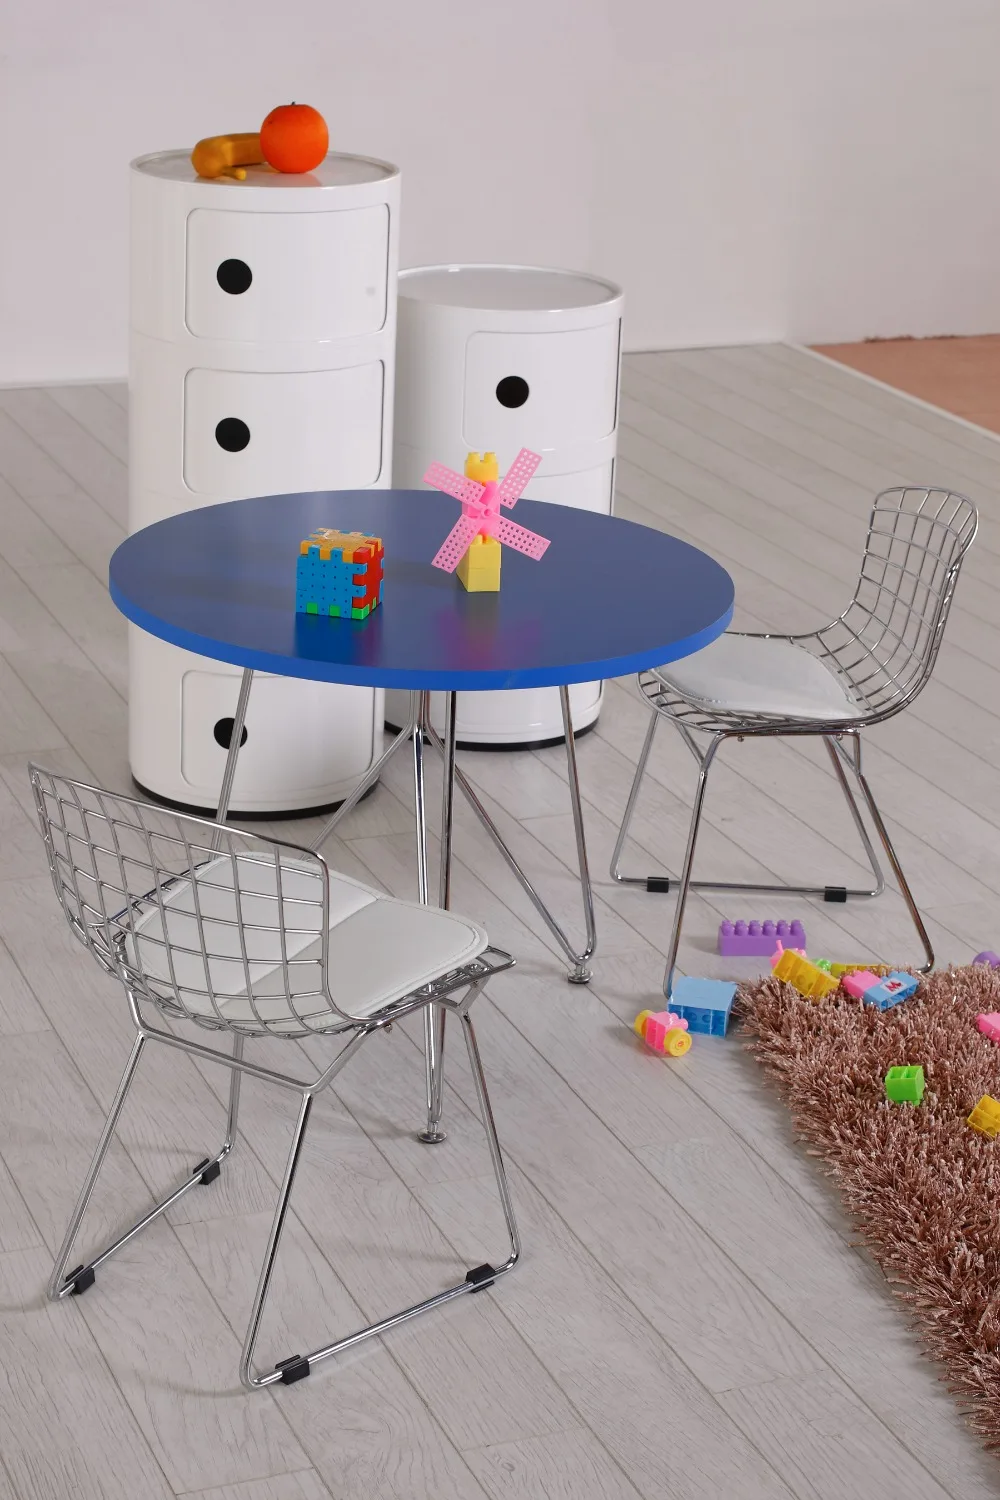 Детский стул с проволокой, детский стул Bertoia, детский стул, минималистичный современный столик для кормления малыша, современный классический дизайн, популярный хромированный стул